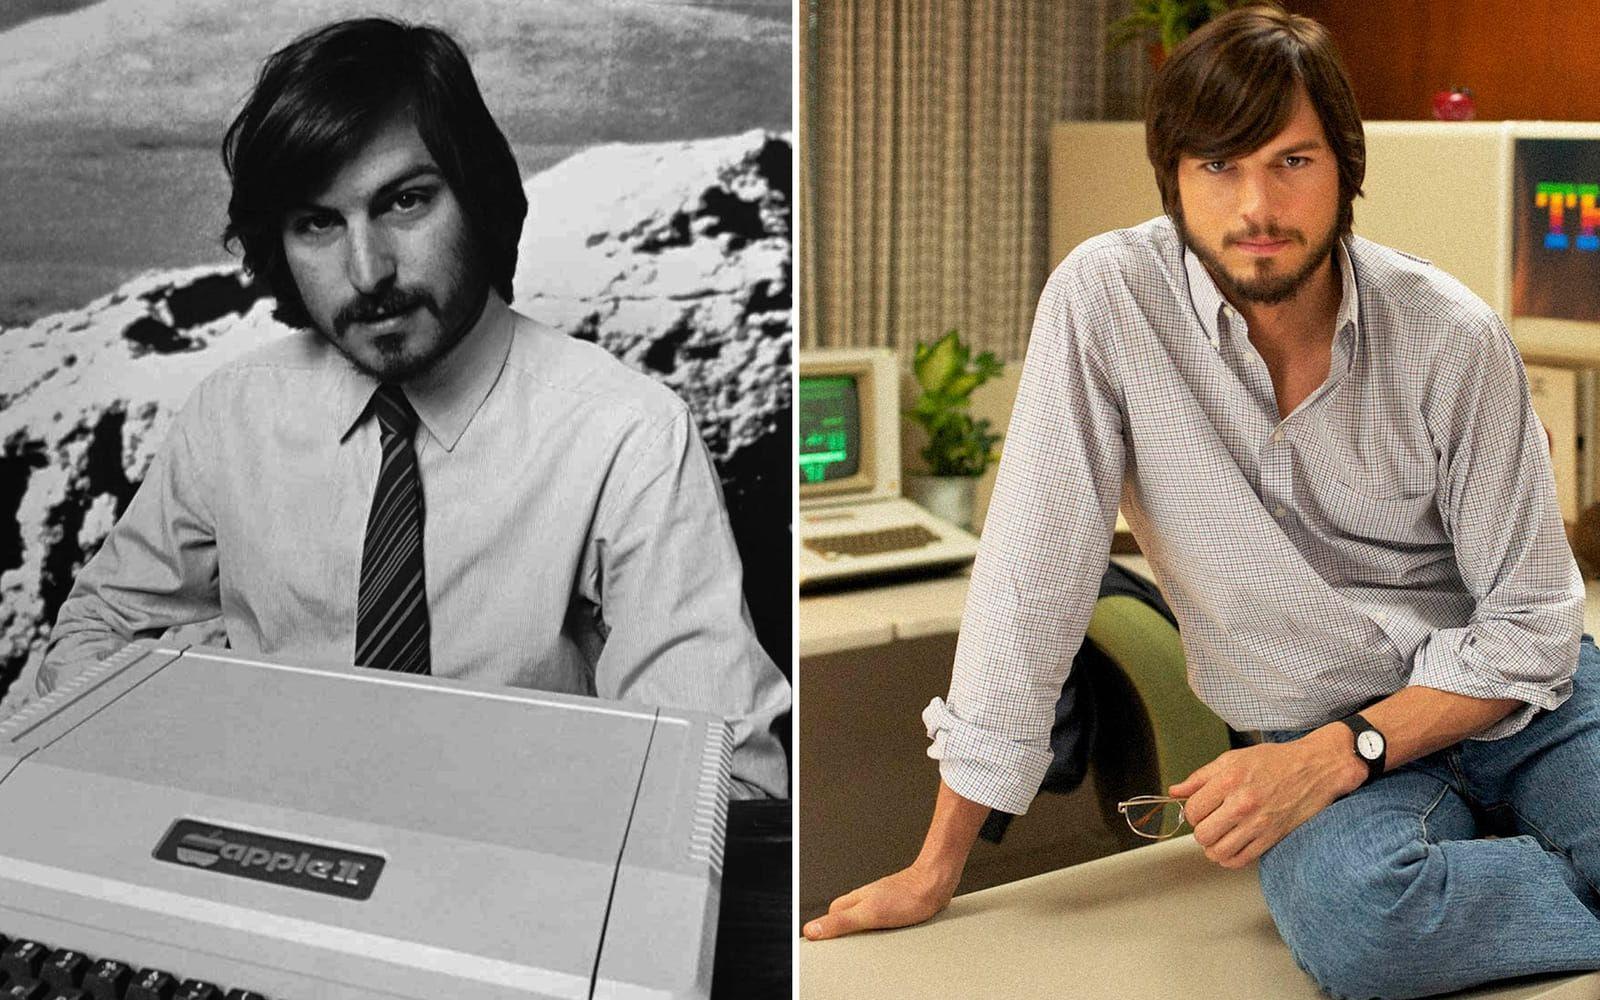 <strong>Originalet: Steve Jobs. Skådespelaren: Ashton Kutcher.</strong> Kutcher var två år före med sin Steve Jobs-tolkning, men inte alls lika framgångsrik. ”Jobs” från 2013 blev till stora delar en besvikelse, även om Kutcher rent utseendemässigt blev en porträttlik Steve Jobs. Foto: TT/Stella Pictures